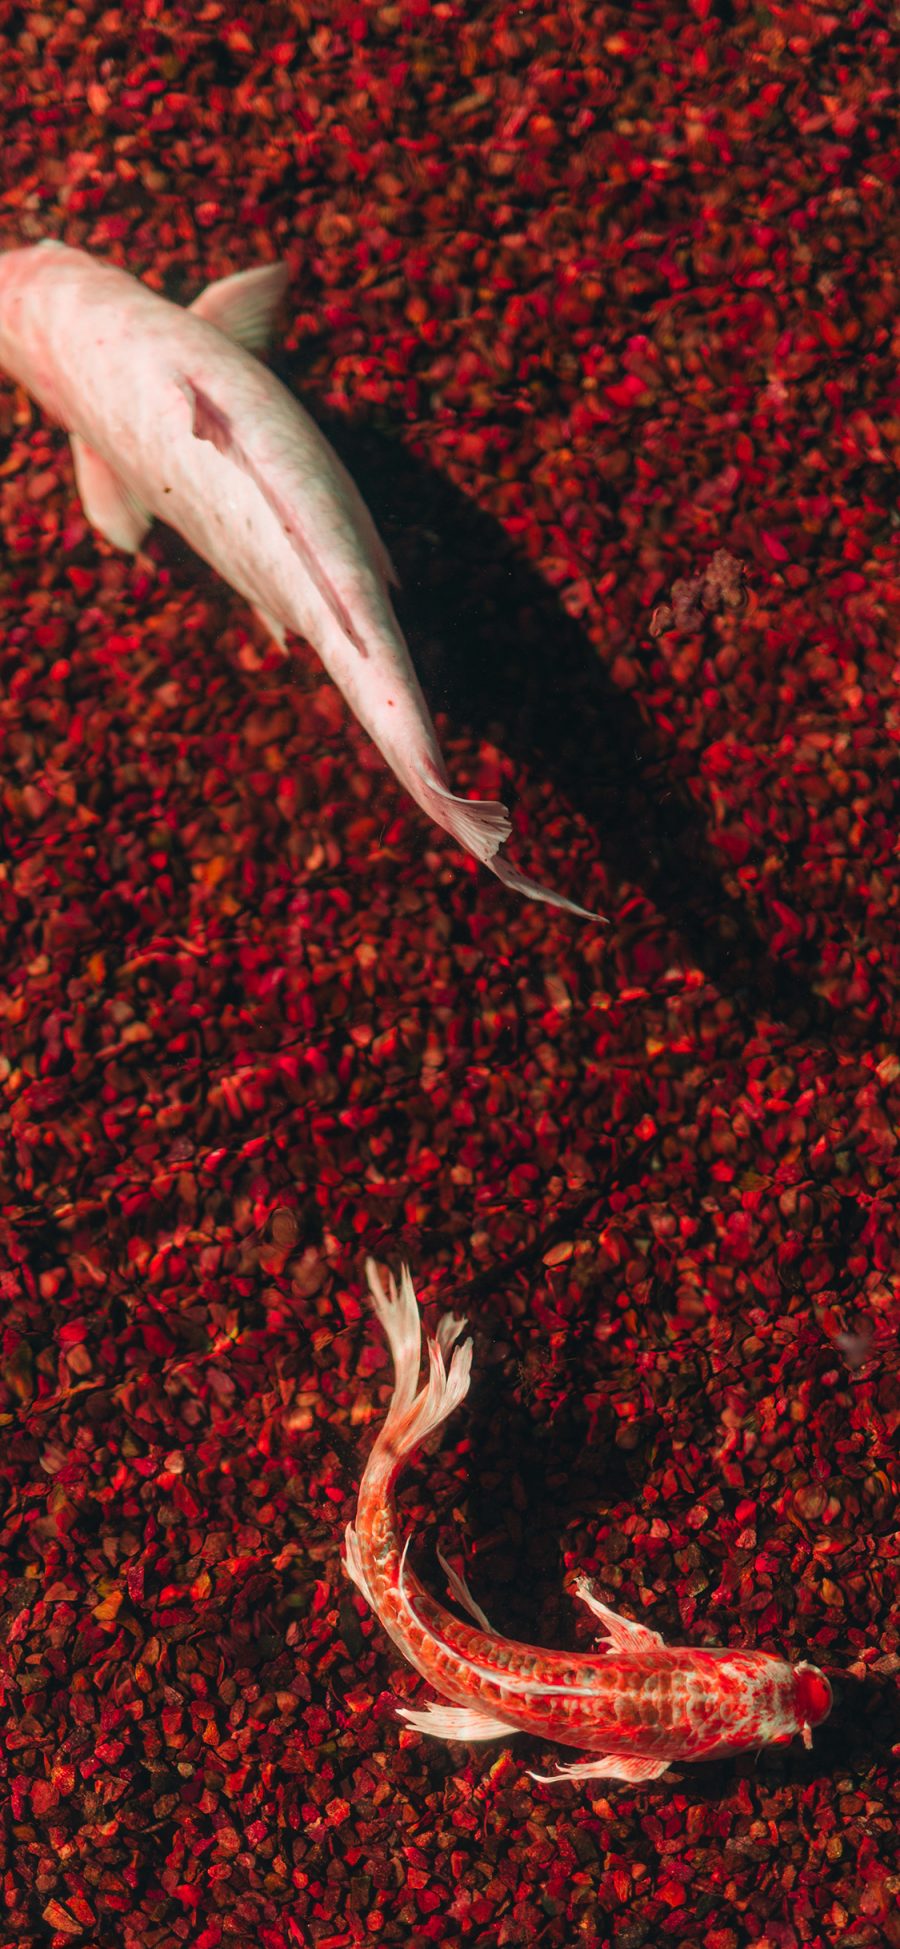 [2436×1125]锦鲤 锦鱼 金鱼 观赏鱼 苹果手机壁纸图片